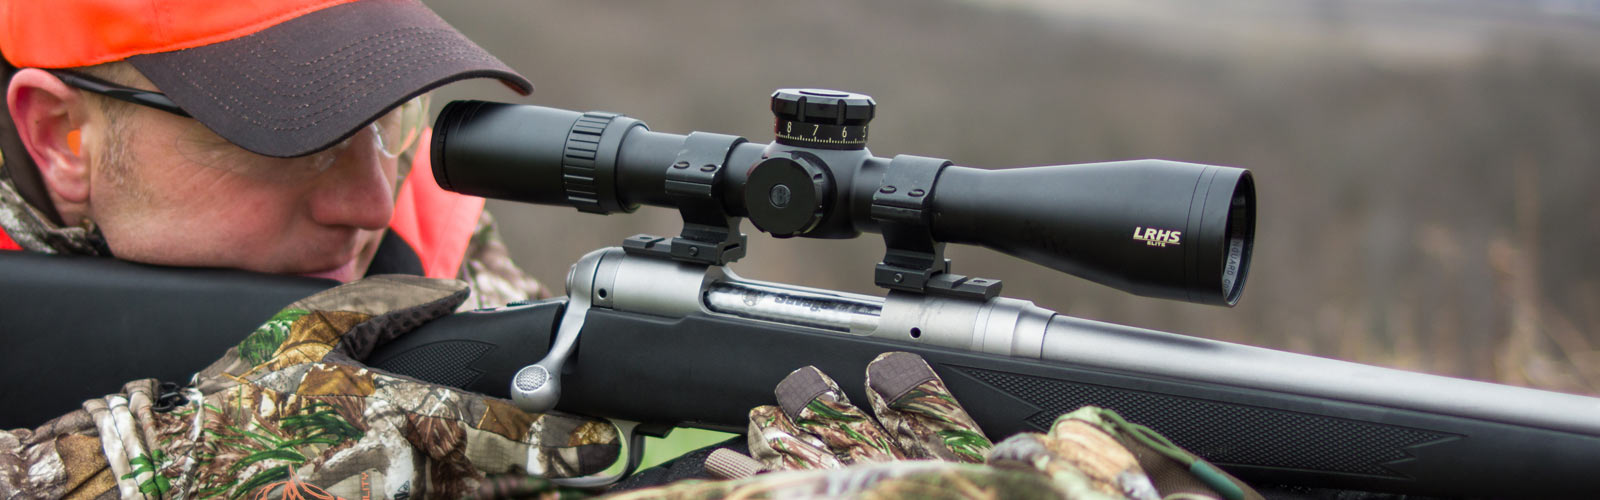 hero-hunting-riflescope